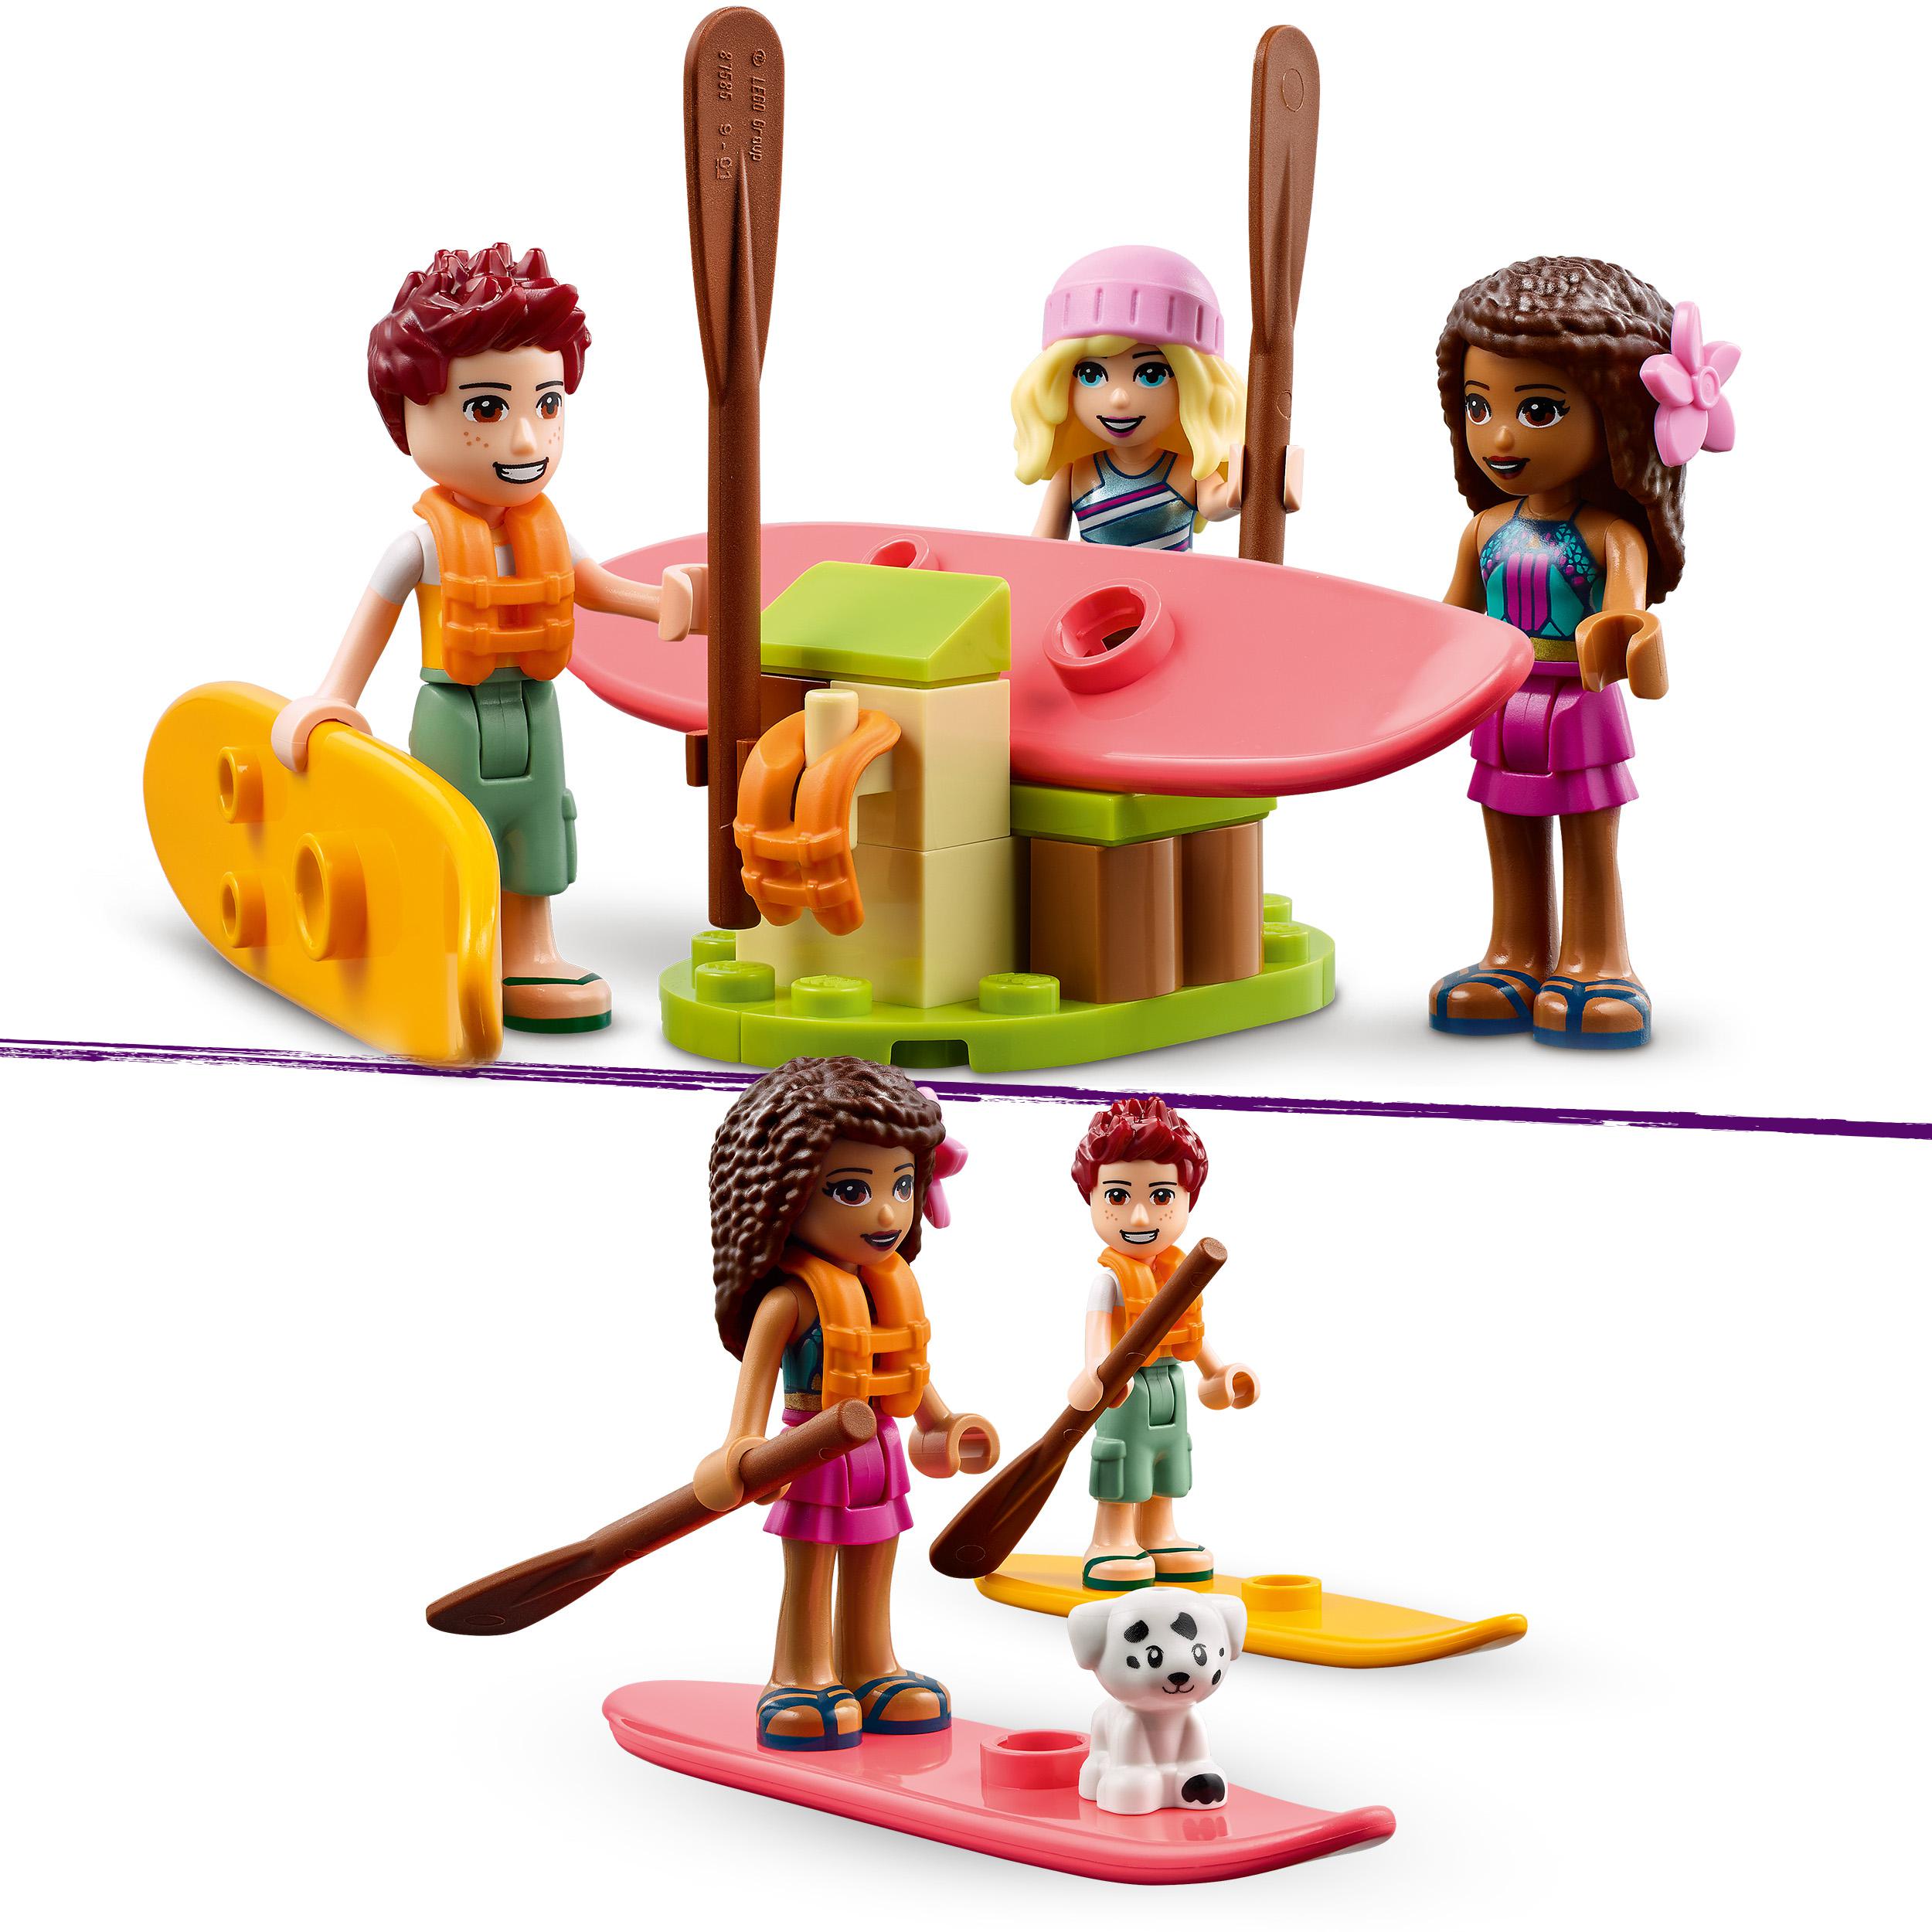 LEGO Friends Glamping sulla Spiaggia, Giocattoli per Bambini e Bambine di 6 Anni 41700, , large